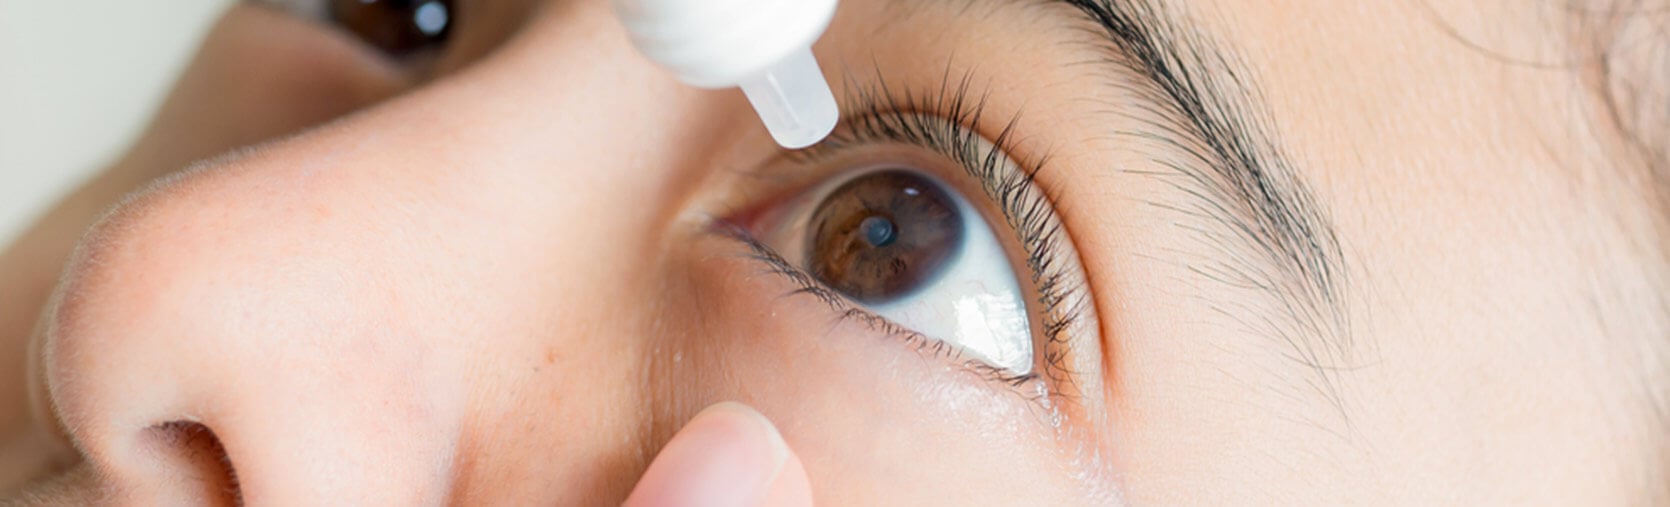 Dry Eye Treatments